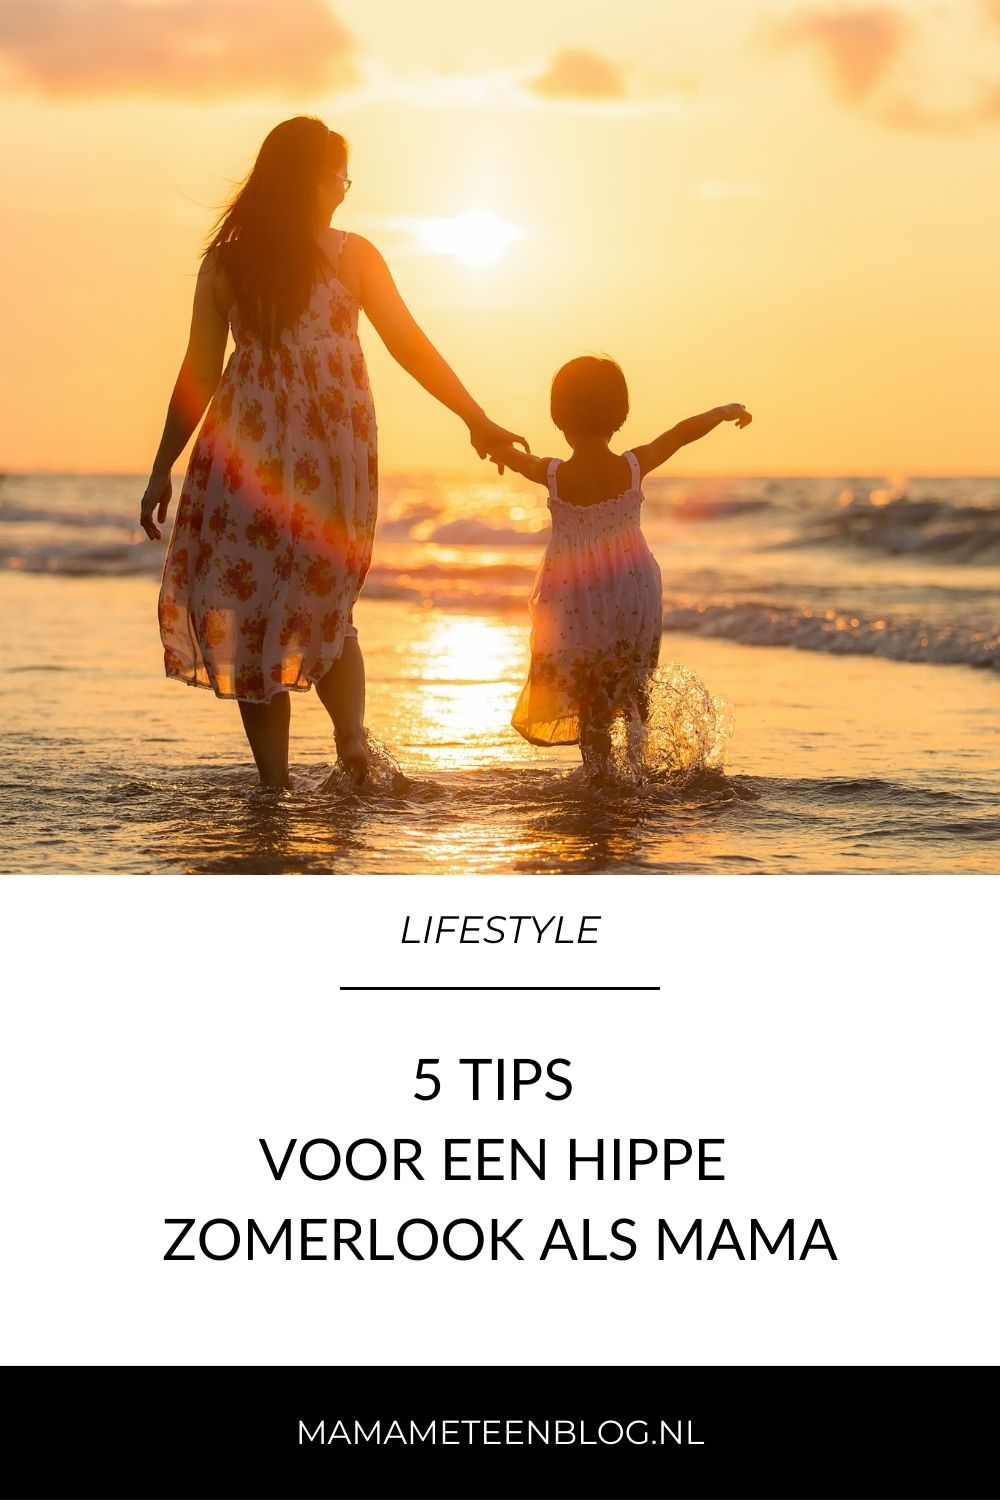 5 Tips voor een hippe zomerlook als mama mamameteenblog.nl